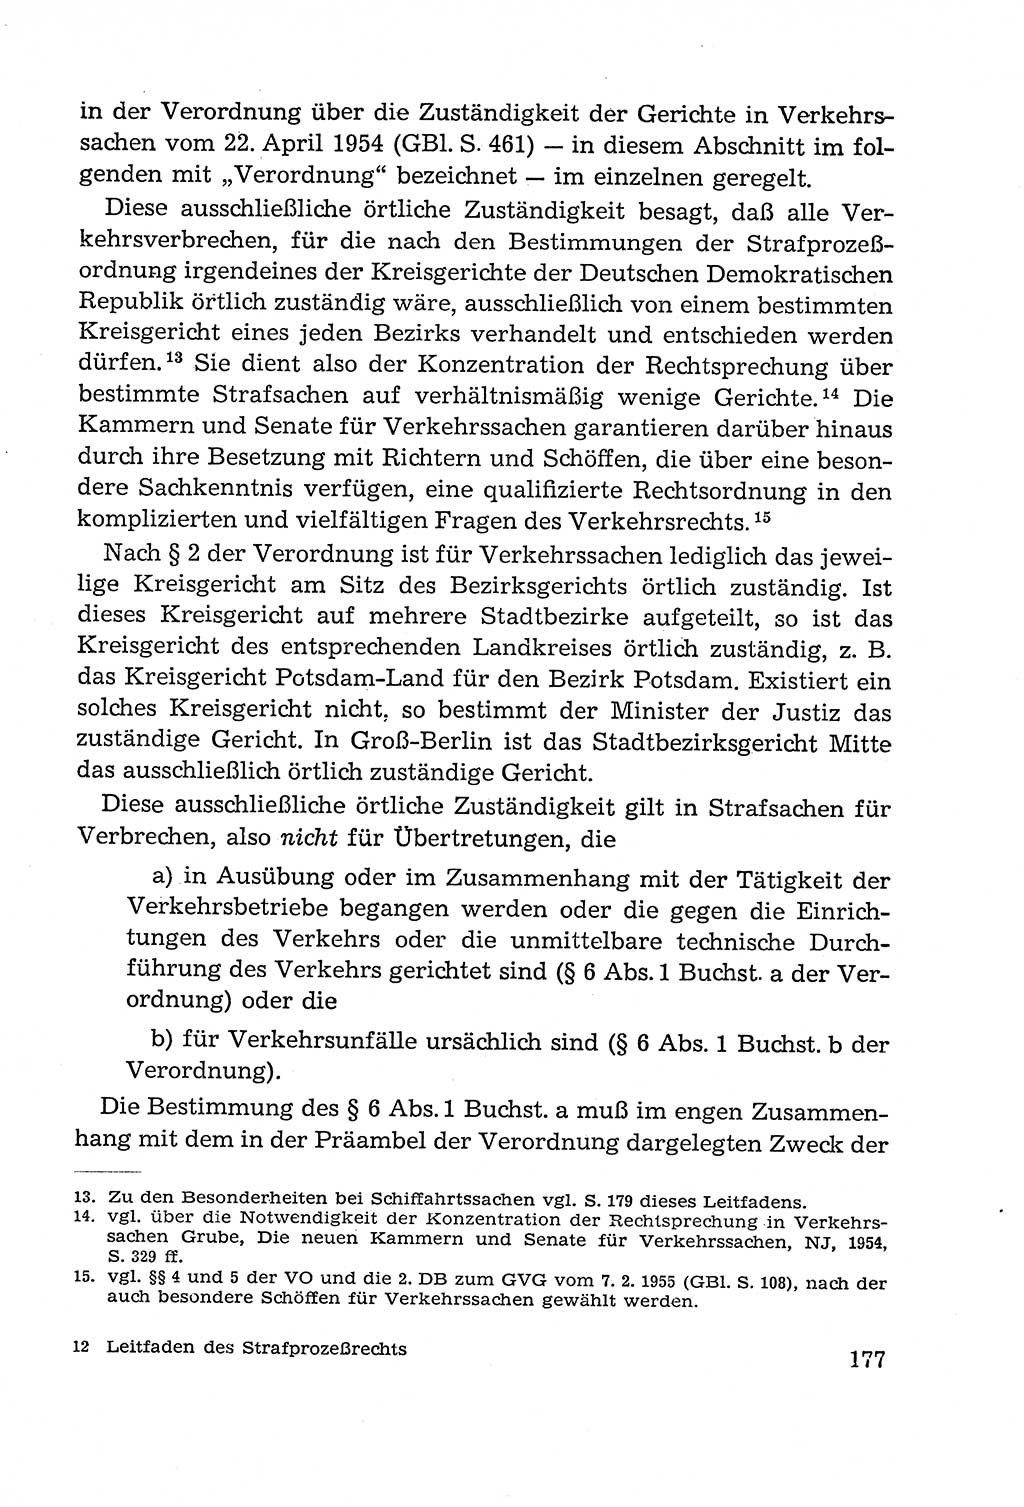 Leitfaden des Strafprozeßrechts der Deutschen Demokratischen Republik (DDR) 1959, Seite 177 (LF StPR DDR 1959, S. 177)